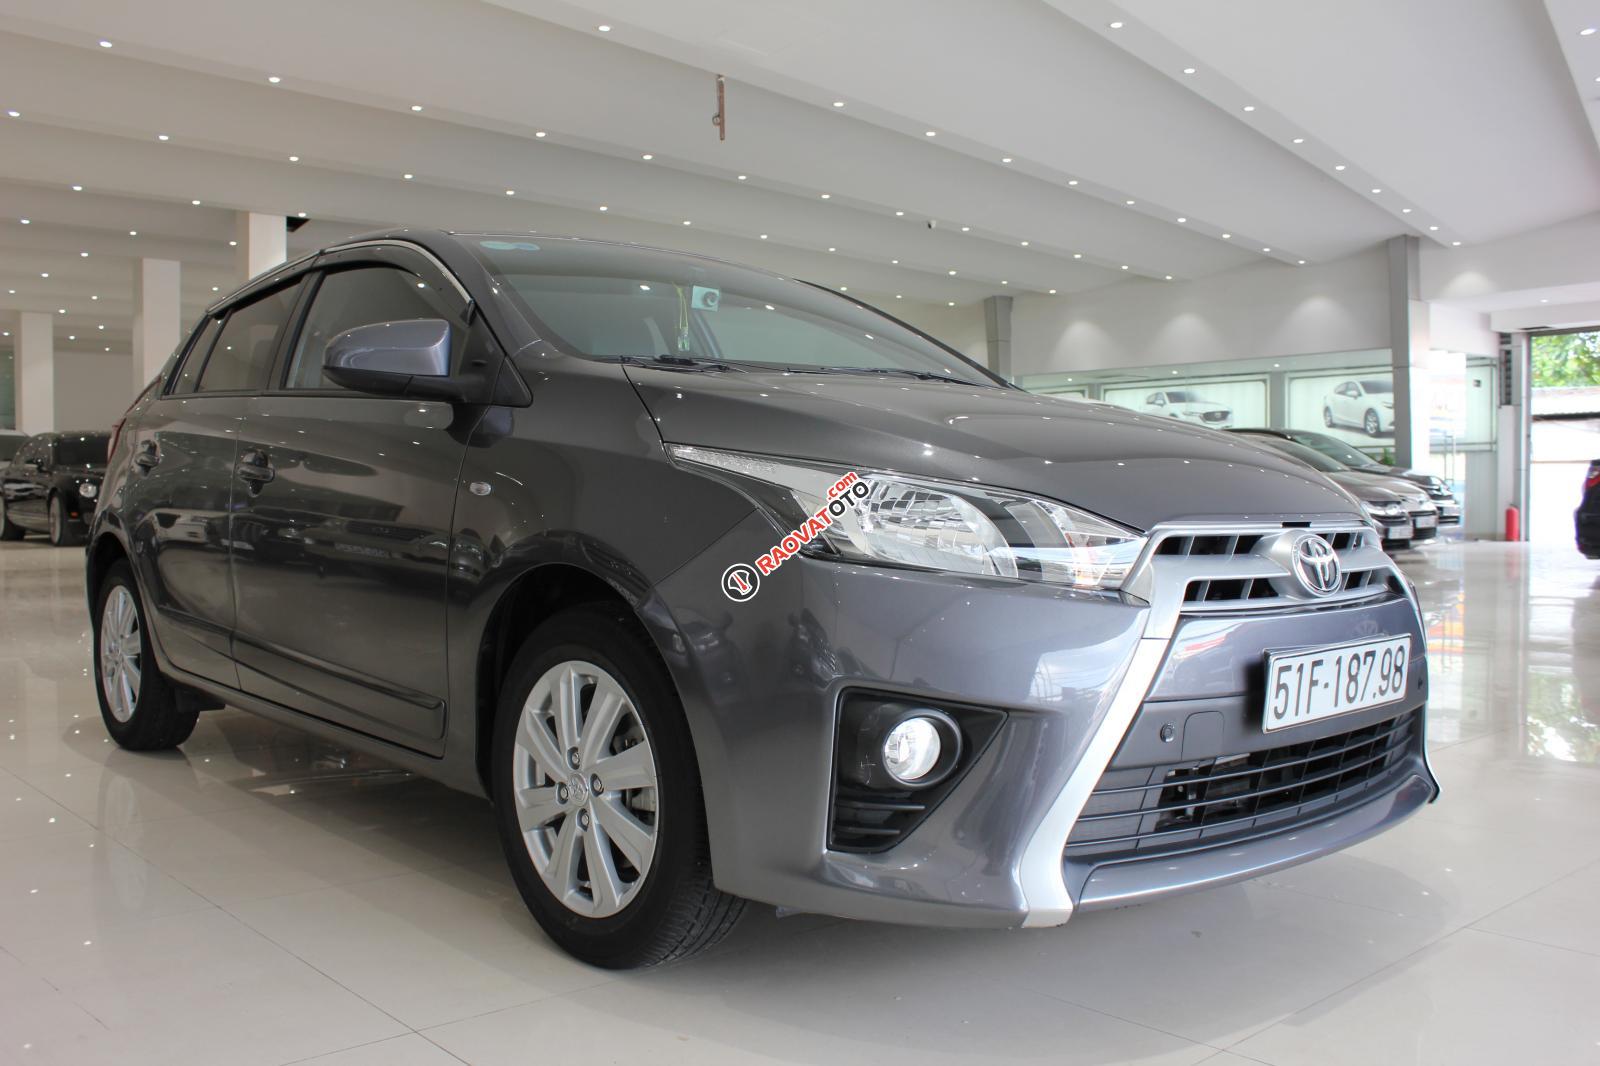 Cần bán Toyota Yaris E số tự động, bảo hành 6 tháng máy hộp số-14